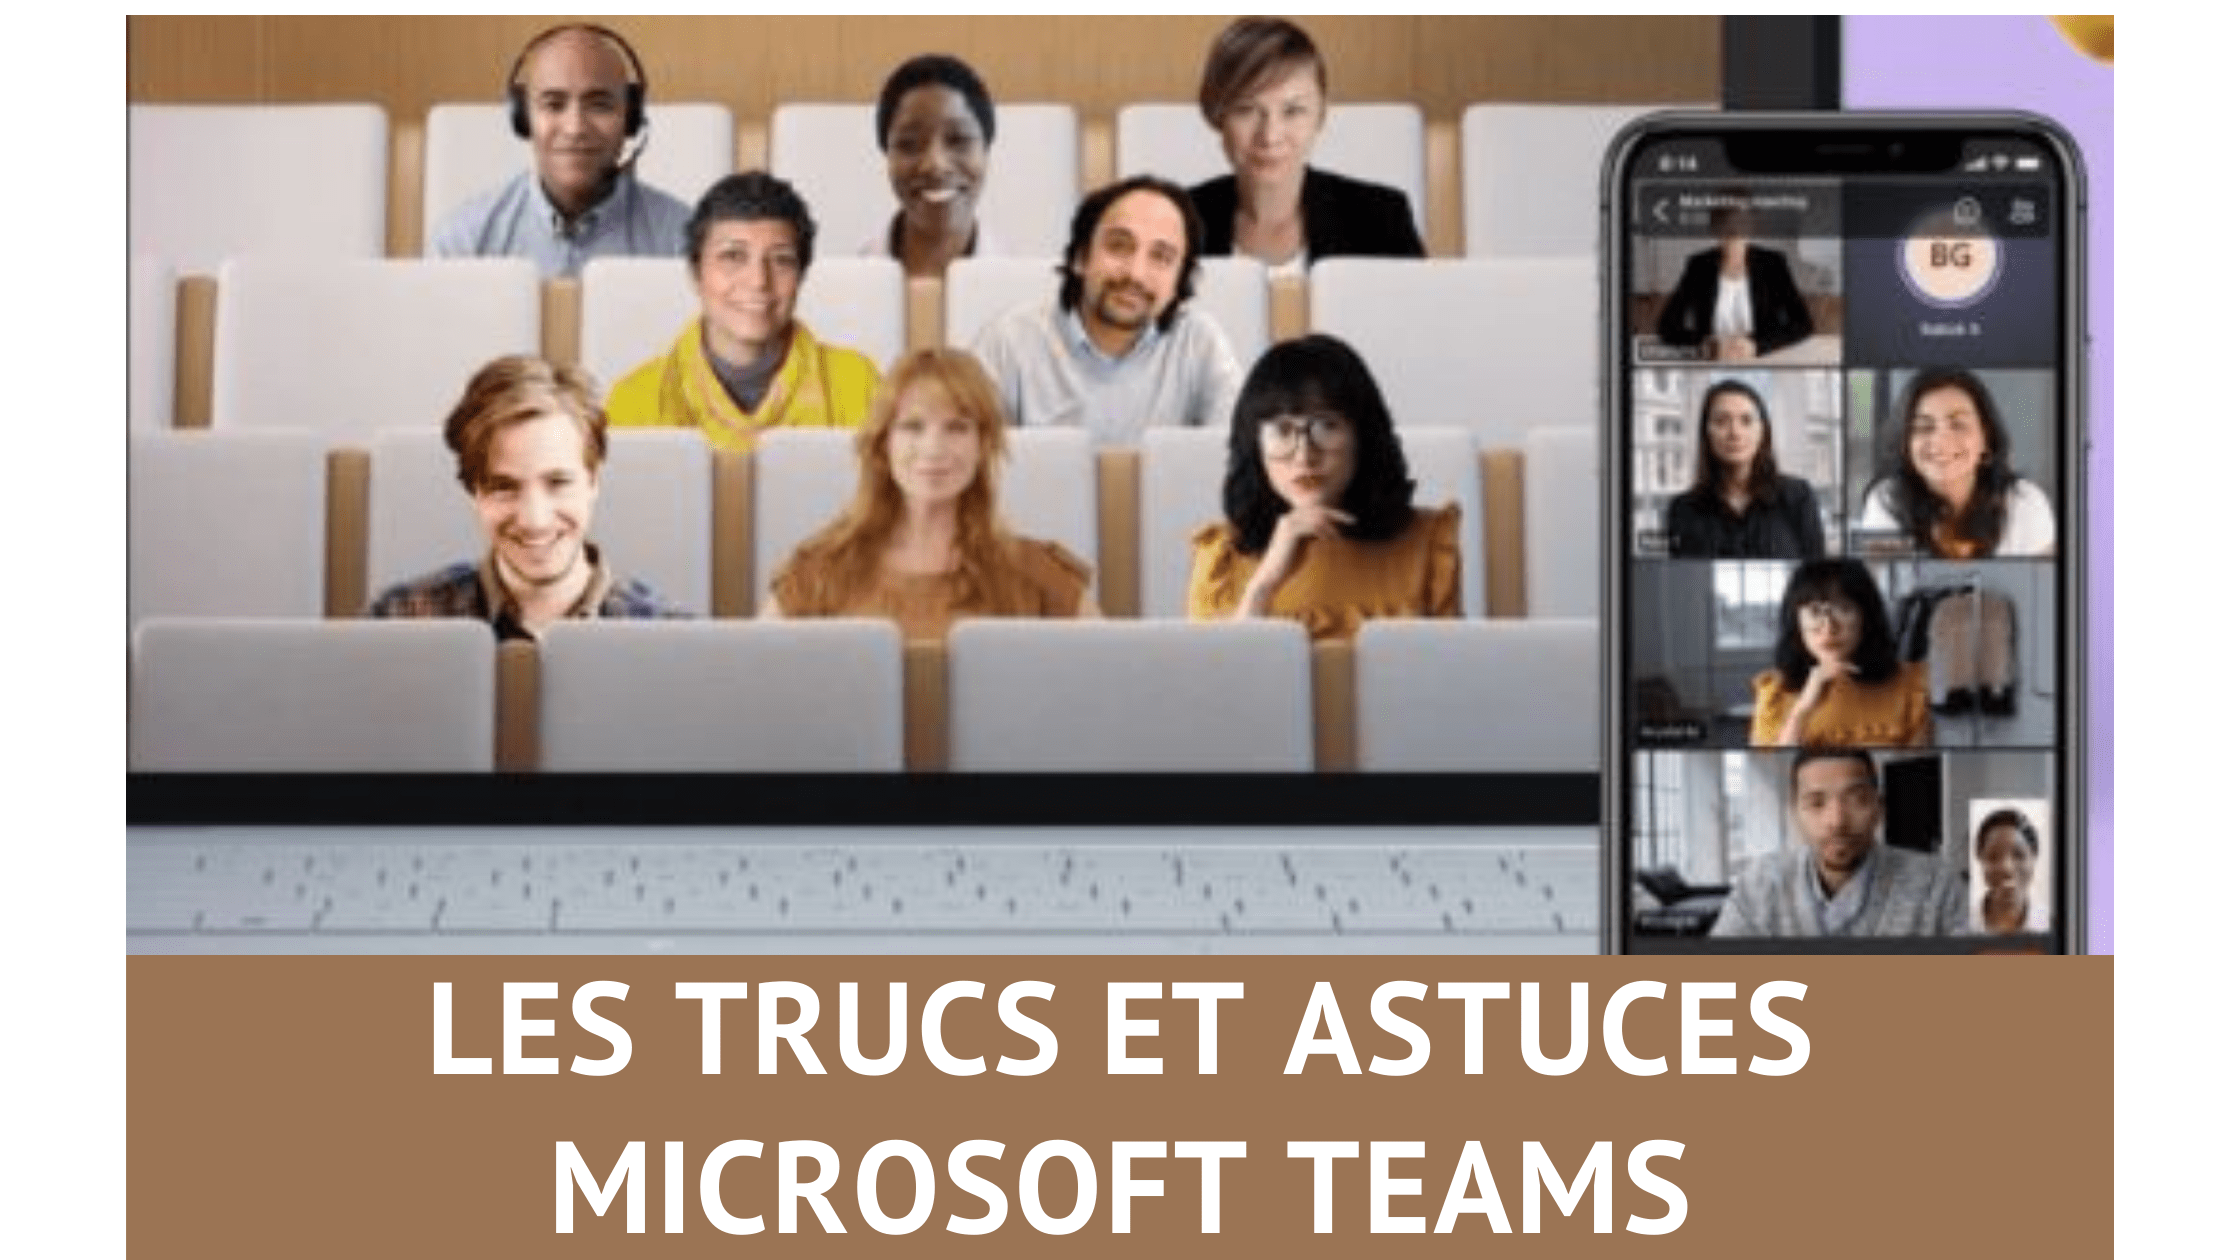 Les trucs et astuces pour Microsoft Teams, découvrez 33 fonctions méconnues de Teams ! 6